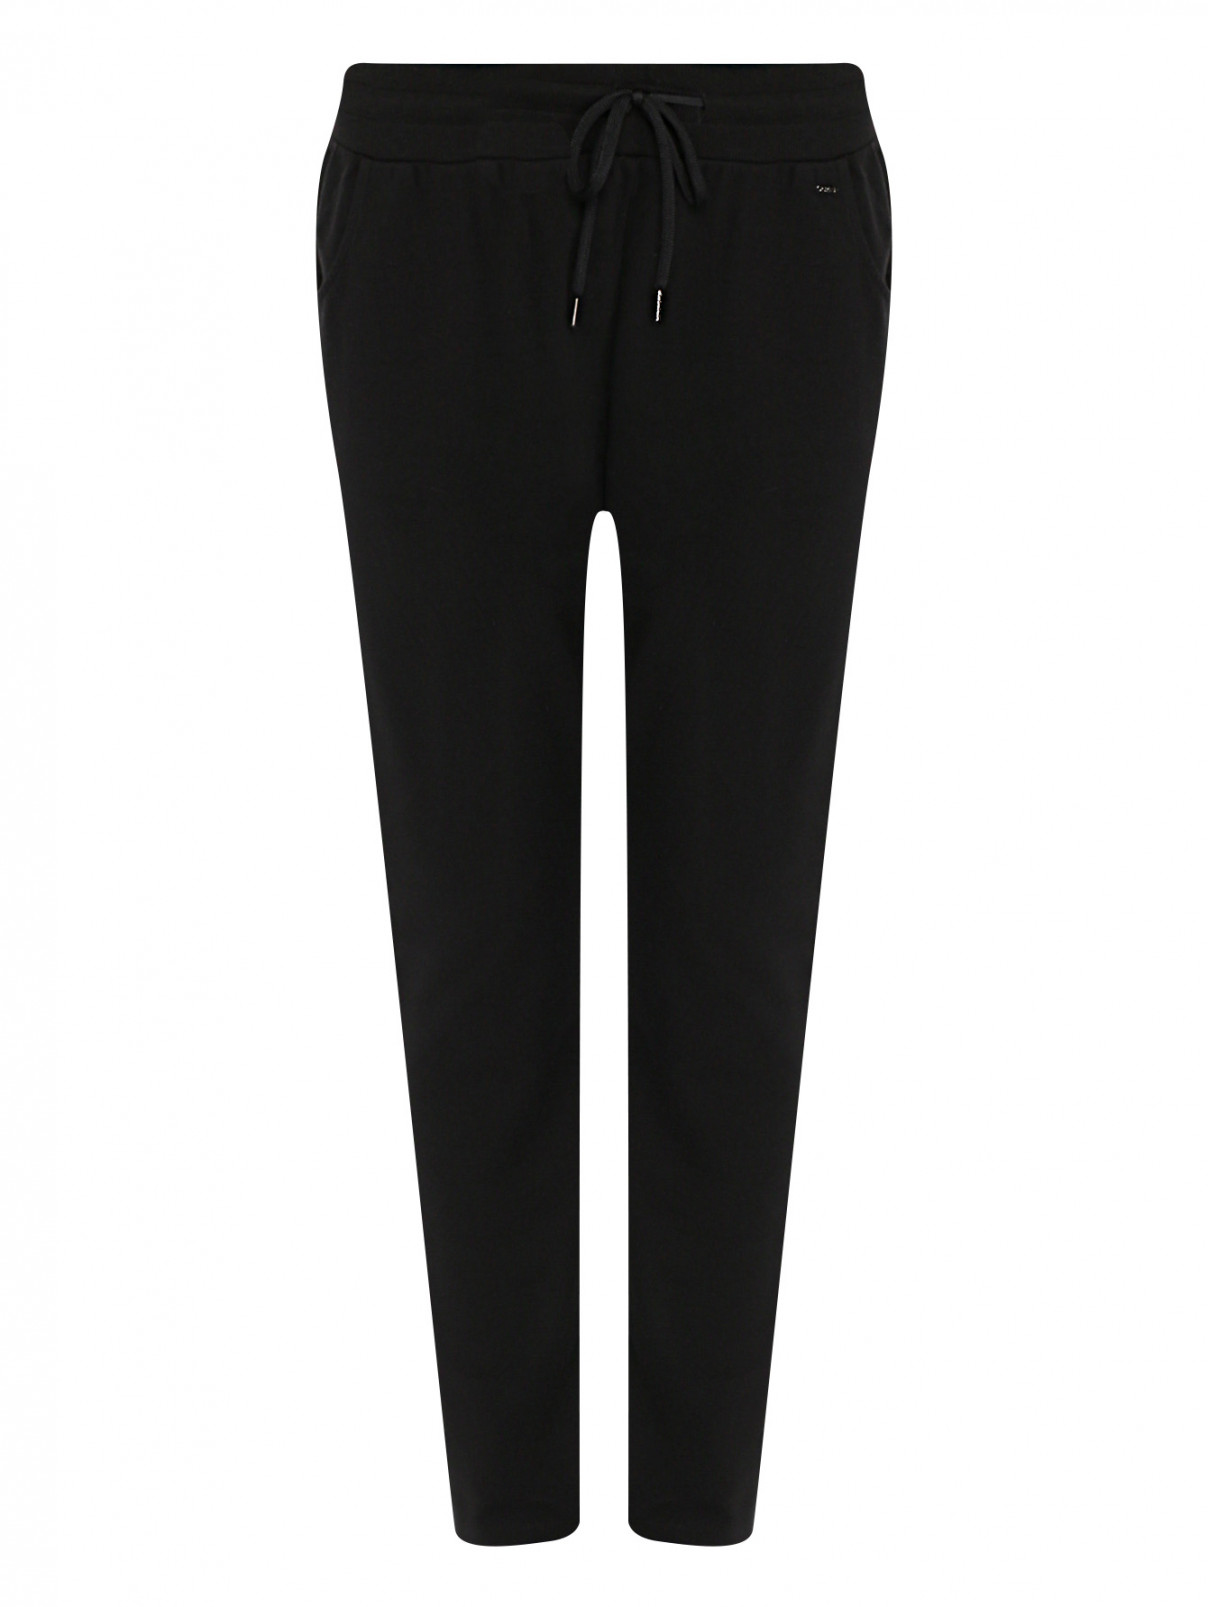 Трикотажные брюки на резинке с карманами GAS  –  Общий вид  – Цвет:  Черный